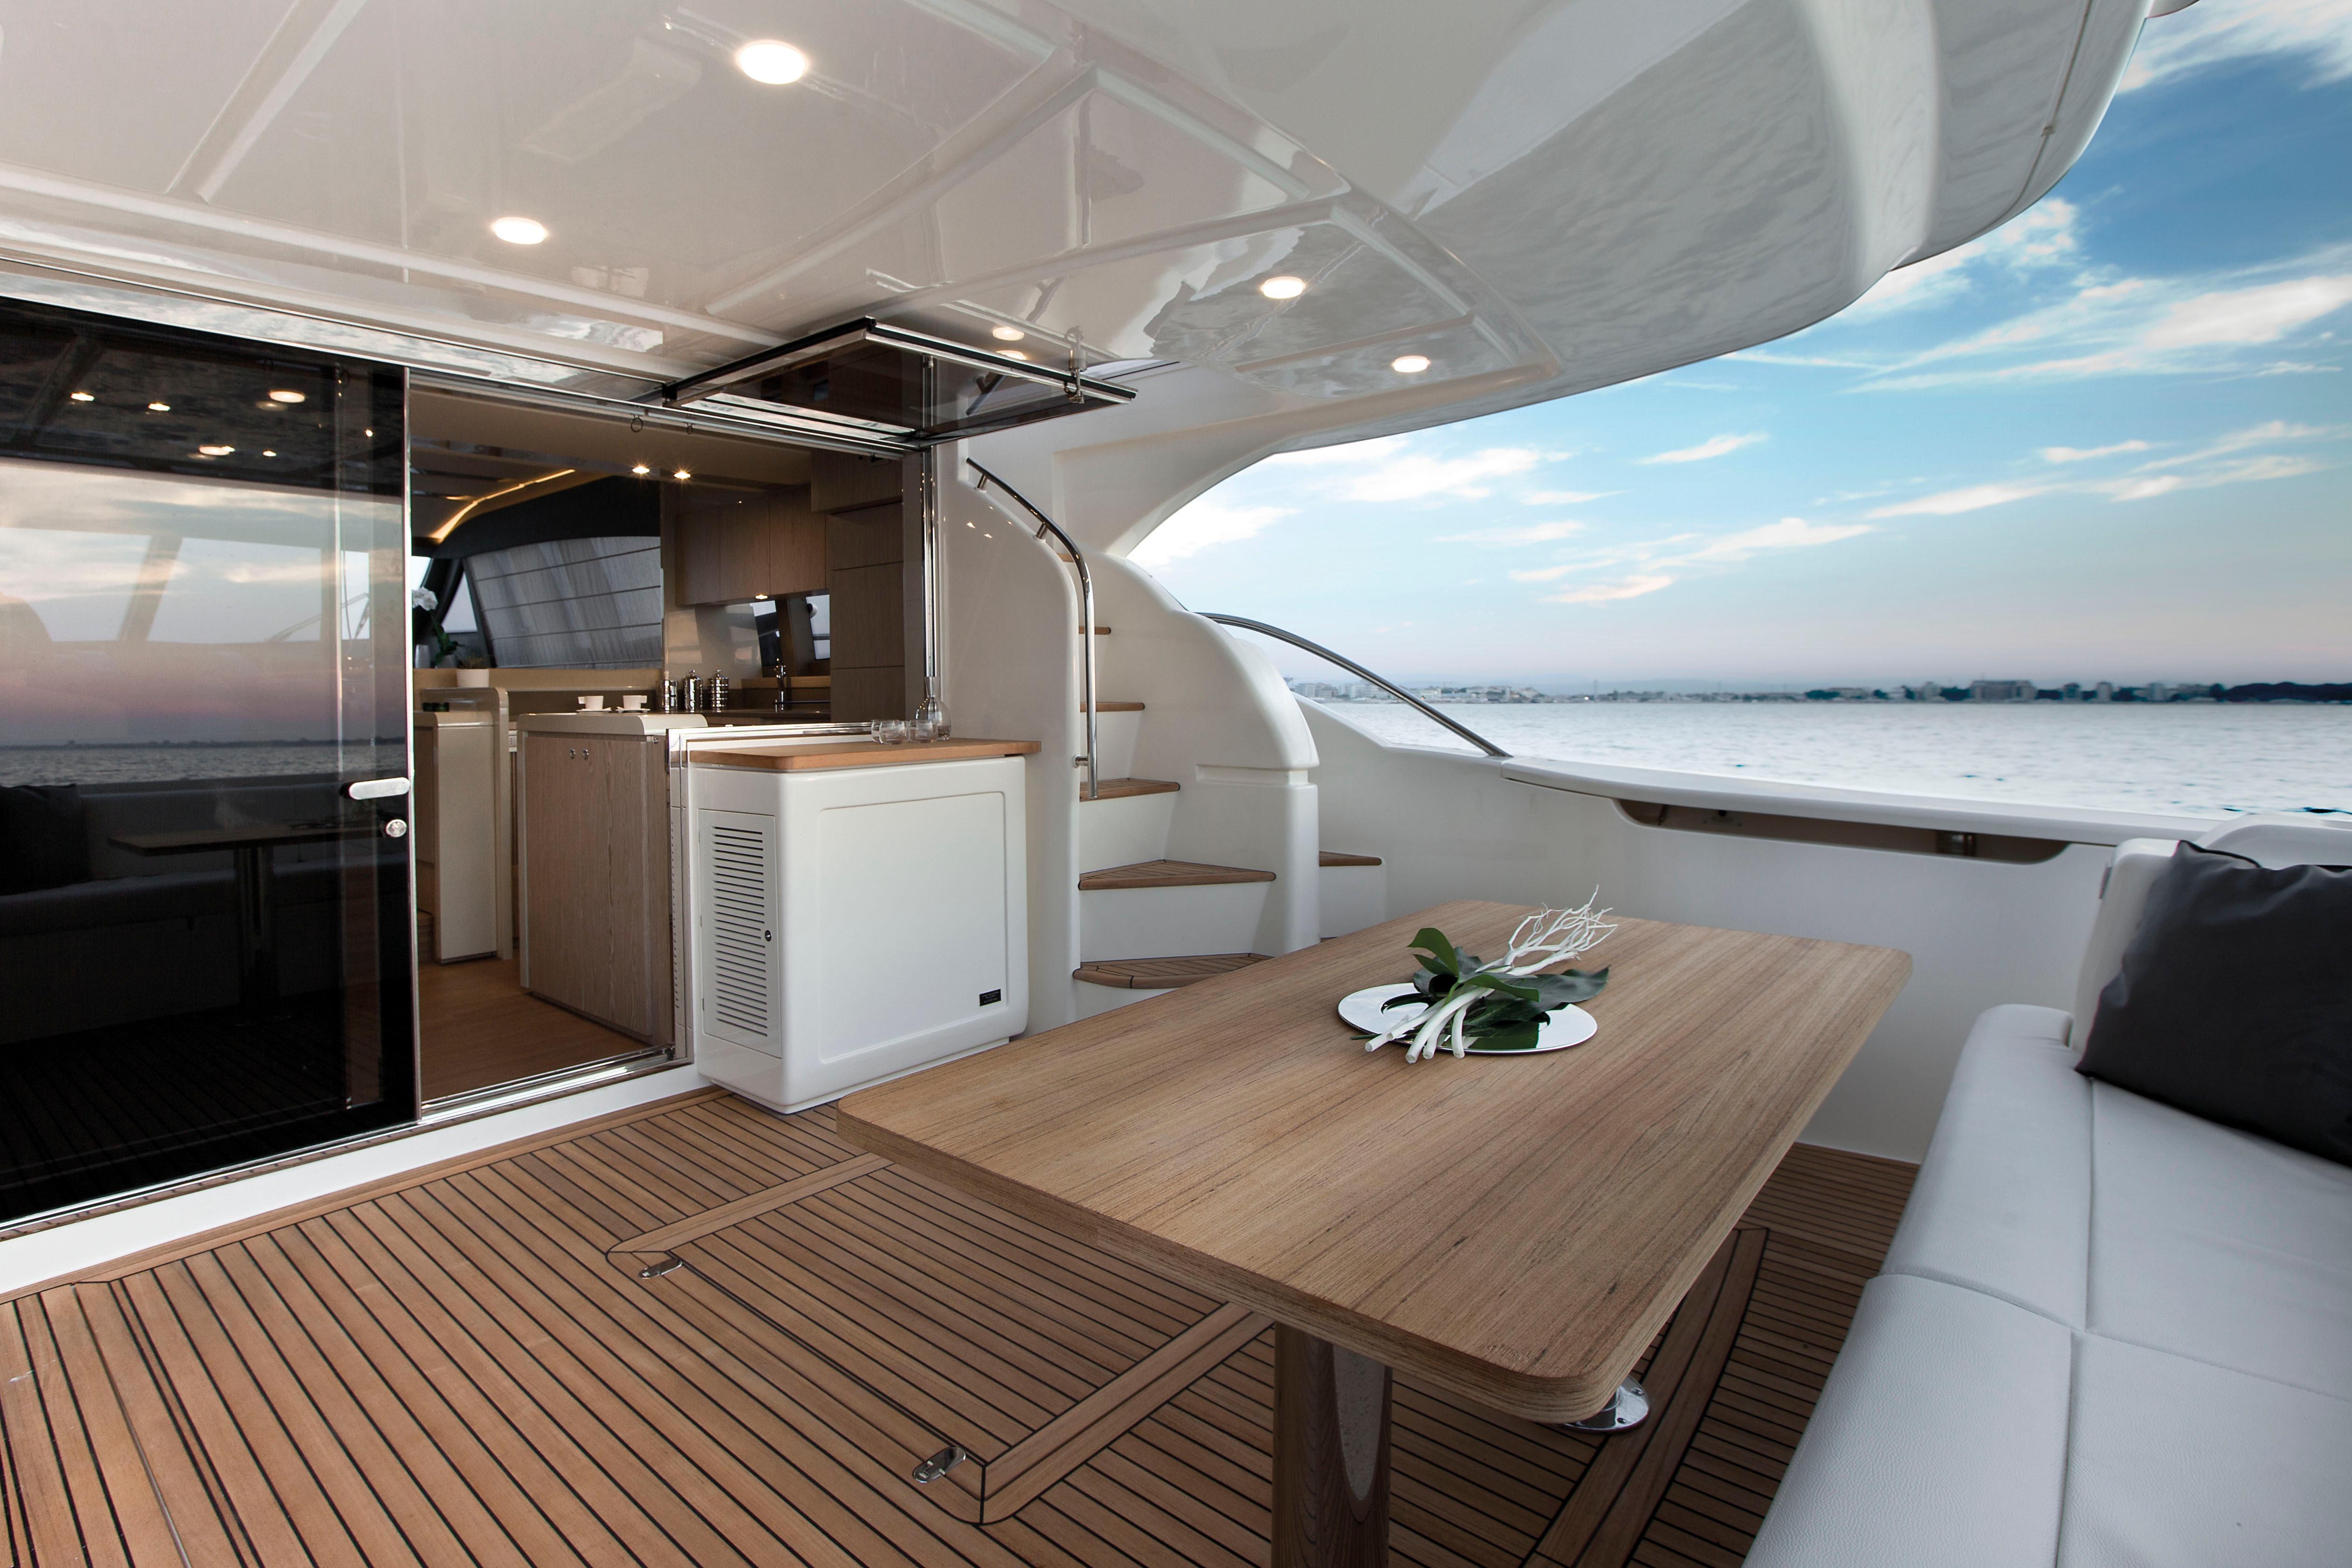 2017 Ferretti Yachts 650